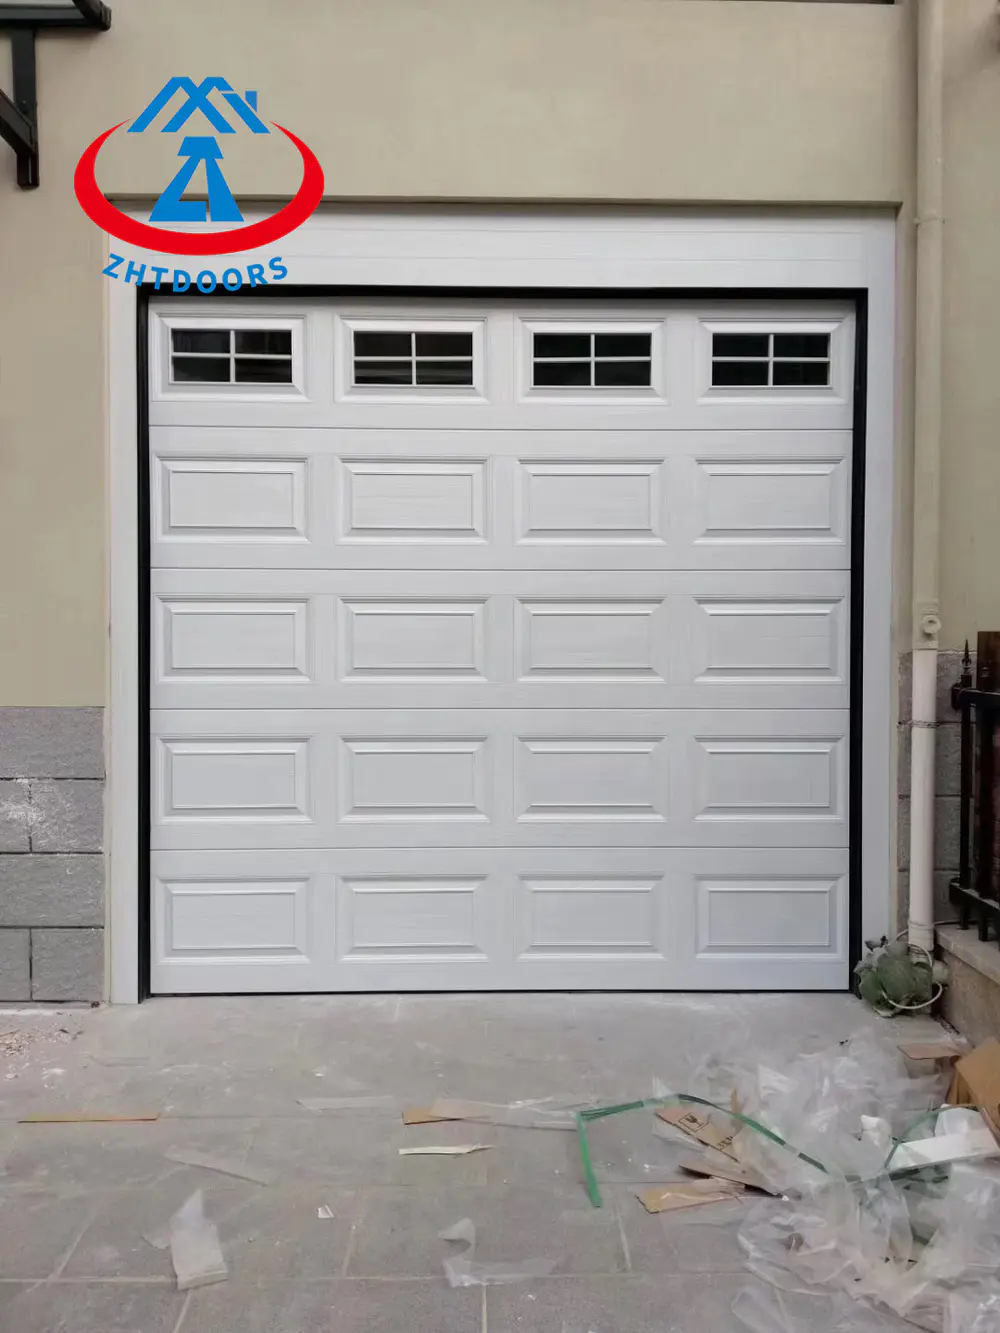 Single Garage Door Price Garage Door With Window Garage Door Remote Control Automatic